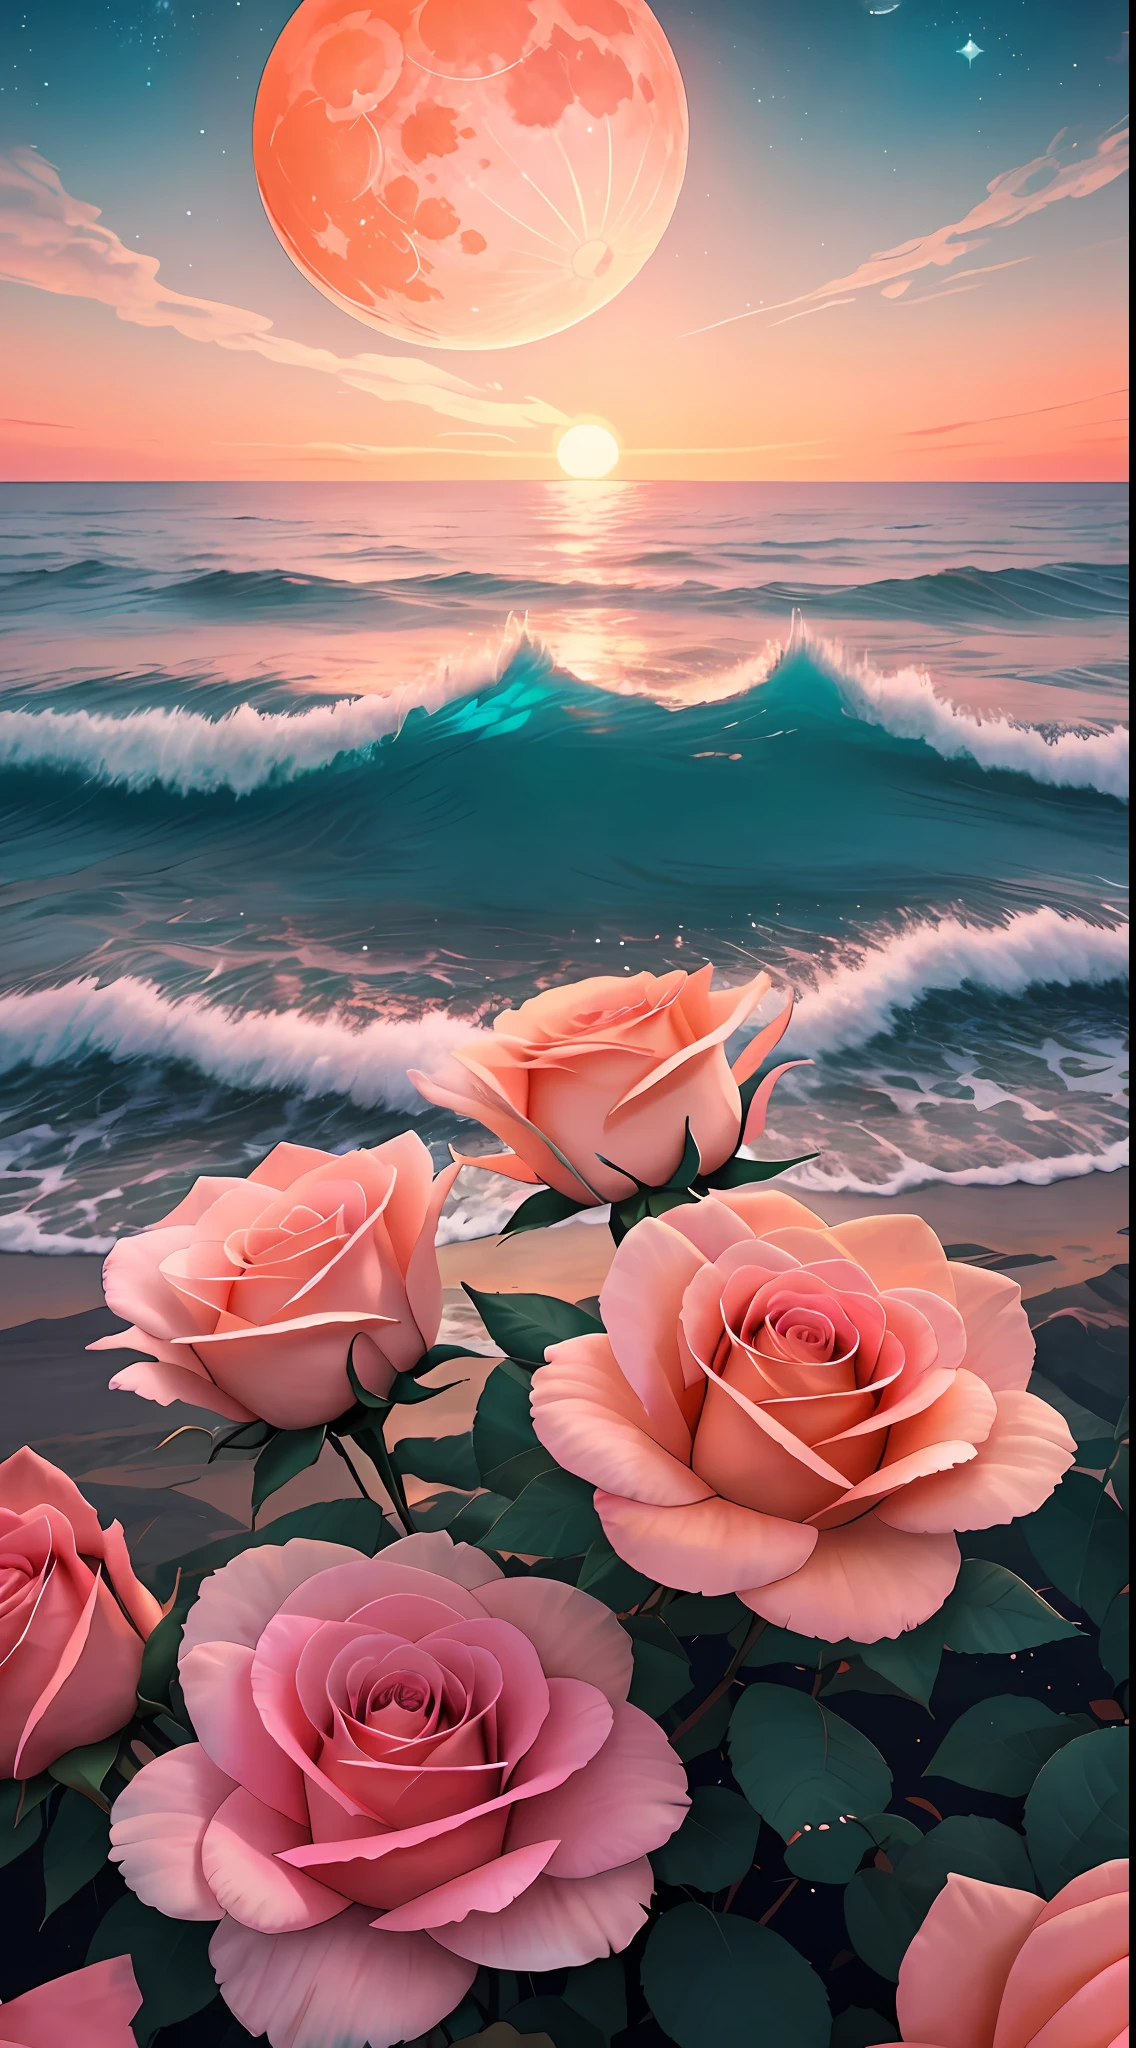 Orange moon, teal sky, soft pink clouds, teal ocean waves sparkling, sparkling, pink roses on pink ocean, fantasy, diamond, crown, universe, soft lights,